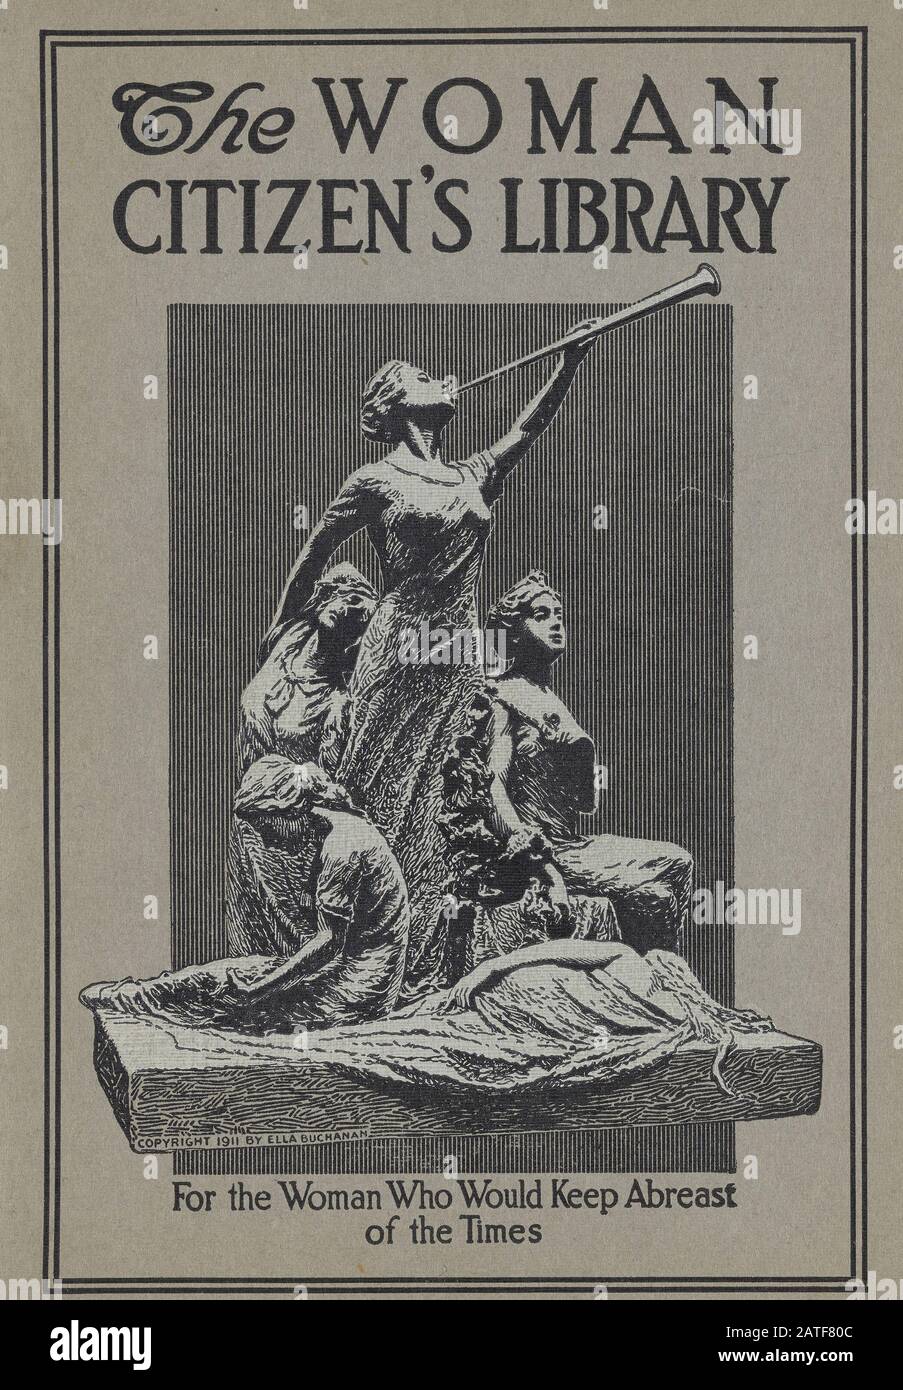 Die Woman Citizen's Library - Frauenwahlrecht in den Vereinigten Staaten von Amerika, im Jahr 1920' Stockfoto